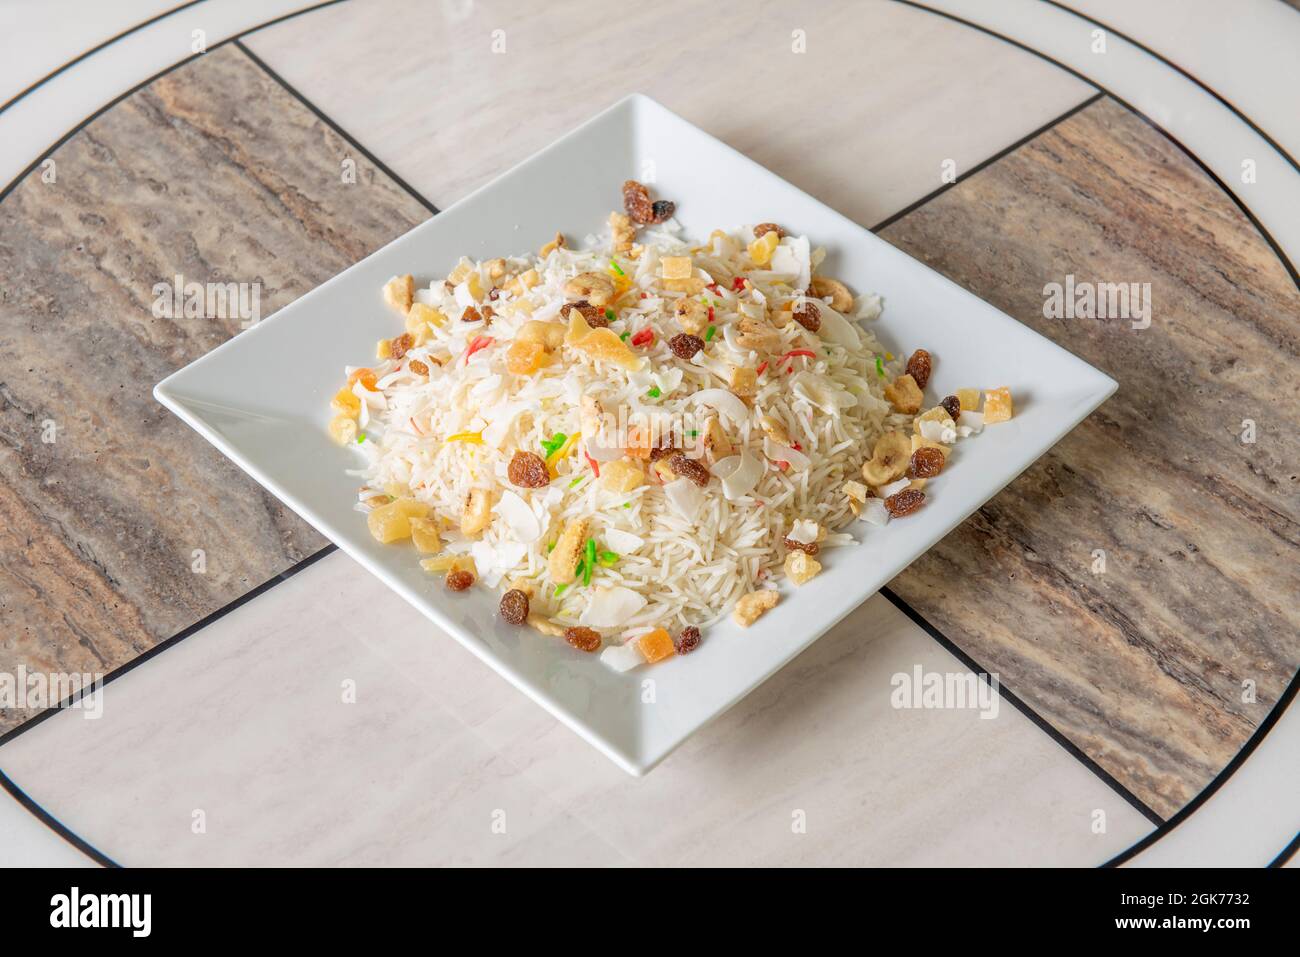 Assiette carrée blanche avec recette indienne de cachemire riz blanc avec  fruits secs et fruits secs doux sur table en marbre Photo Stock - Alamy